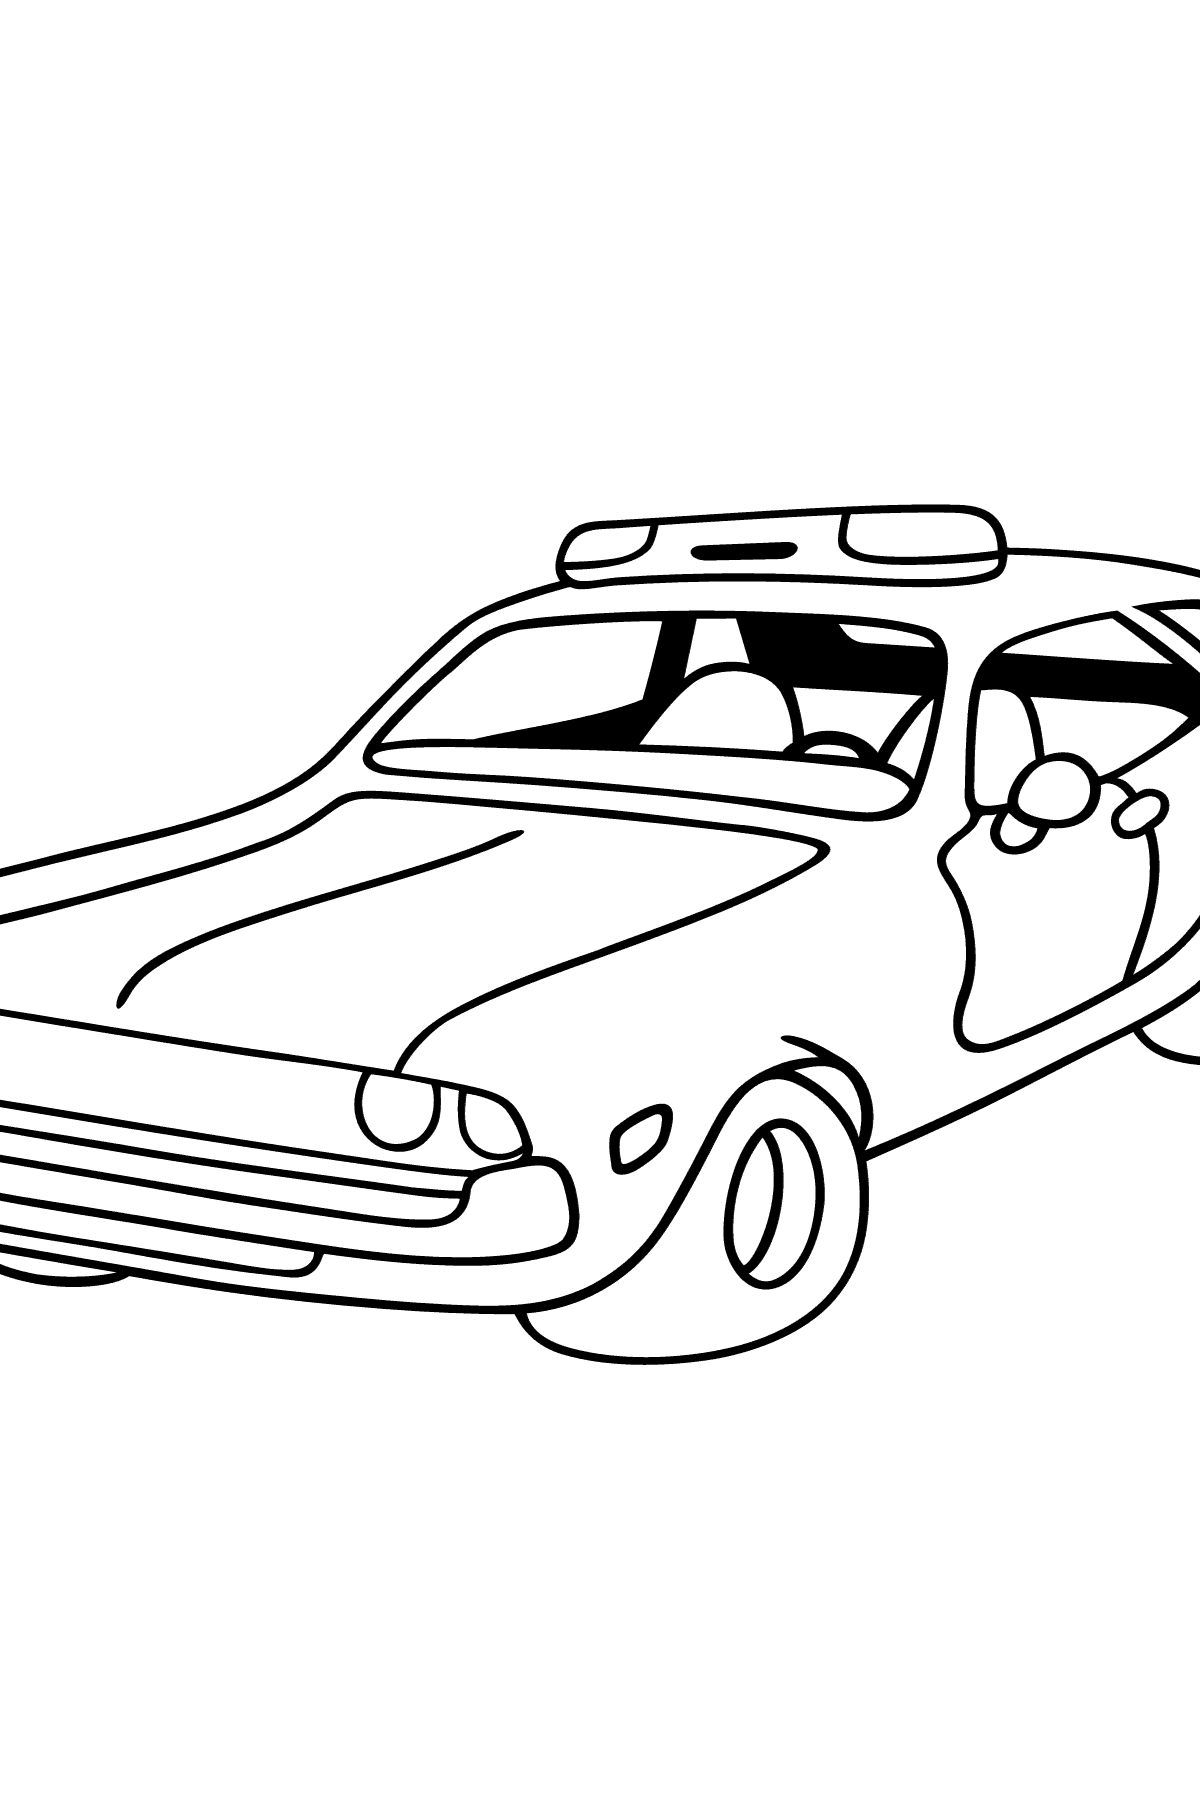 Разукрашка - Машина Полиция - Картинки для Детей